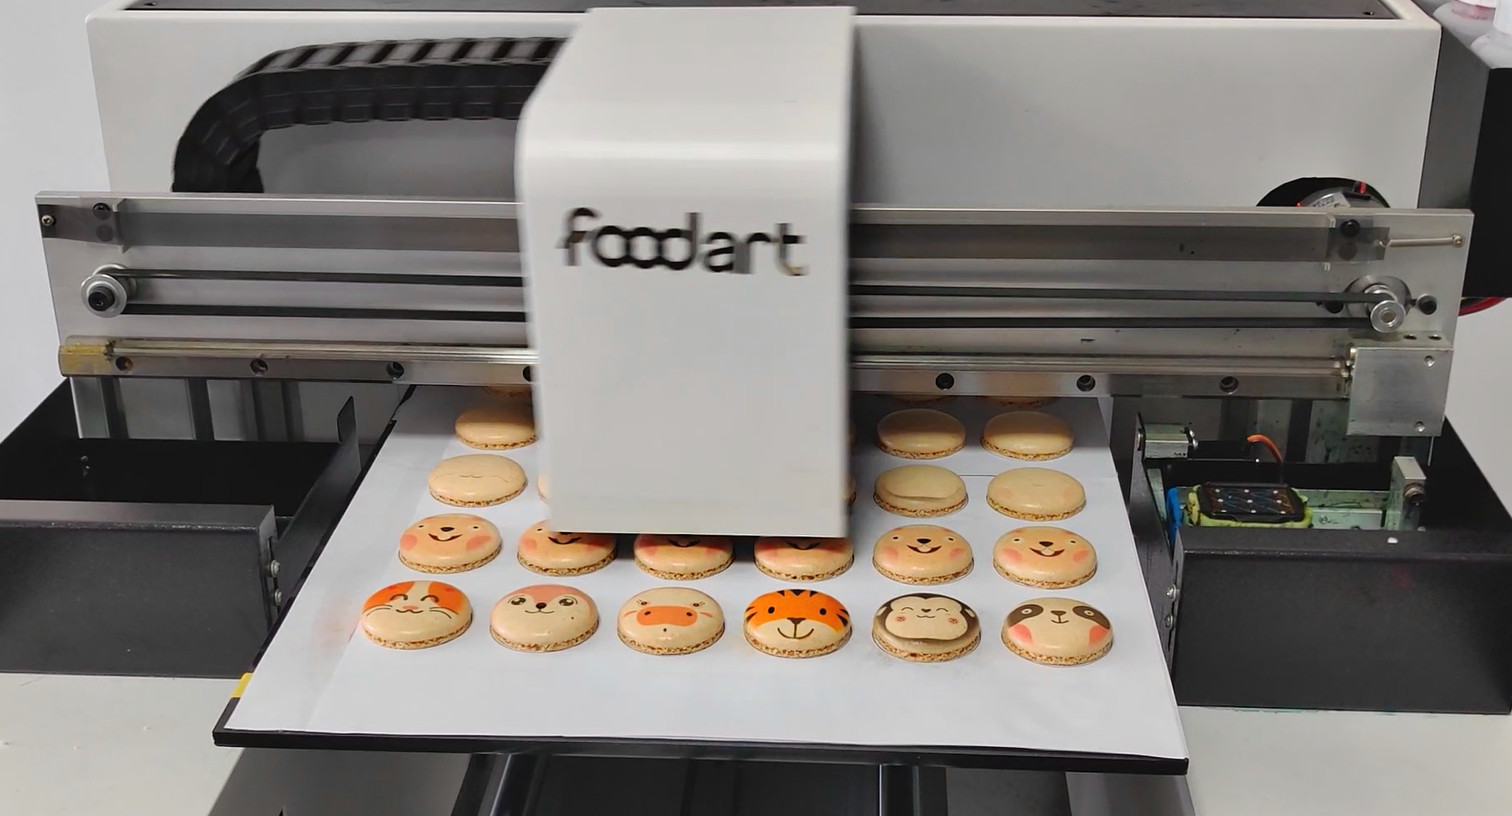 ¿Cómo funcionan las impresoras de alimentos?